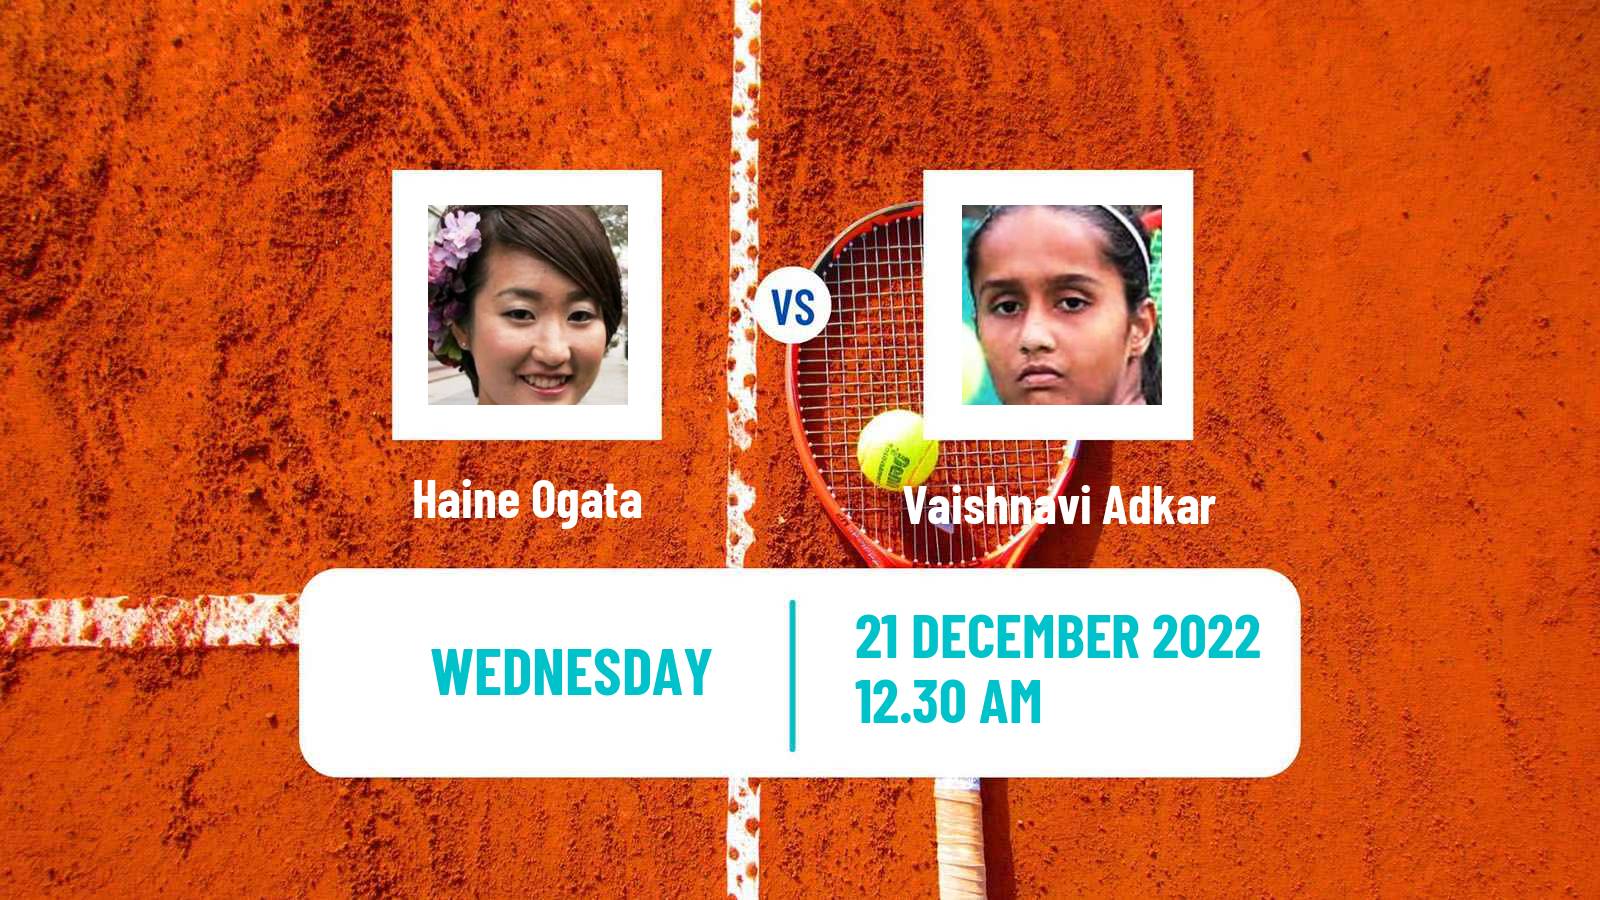 Tennis ITF Tournaments Haine Ogata - Vaishnavi Adkar